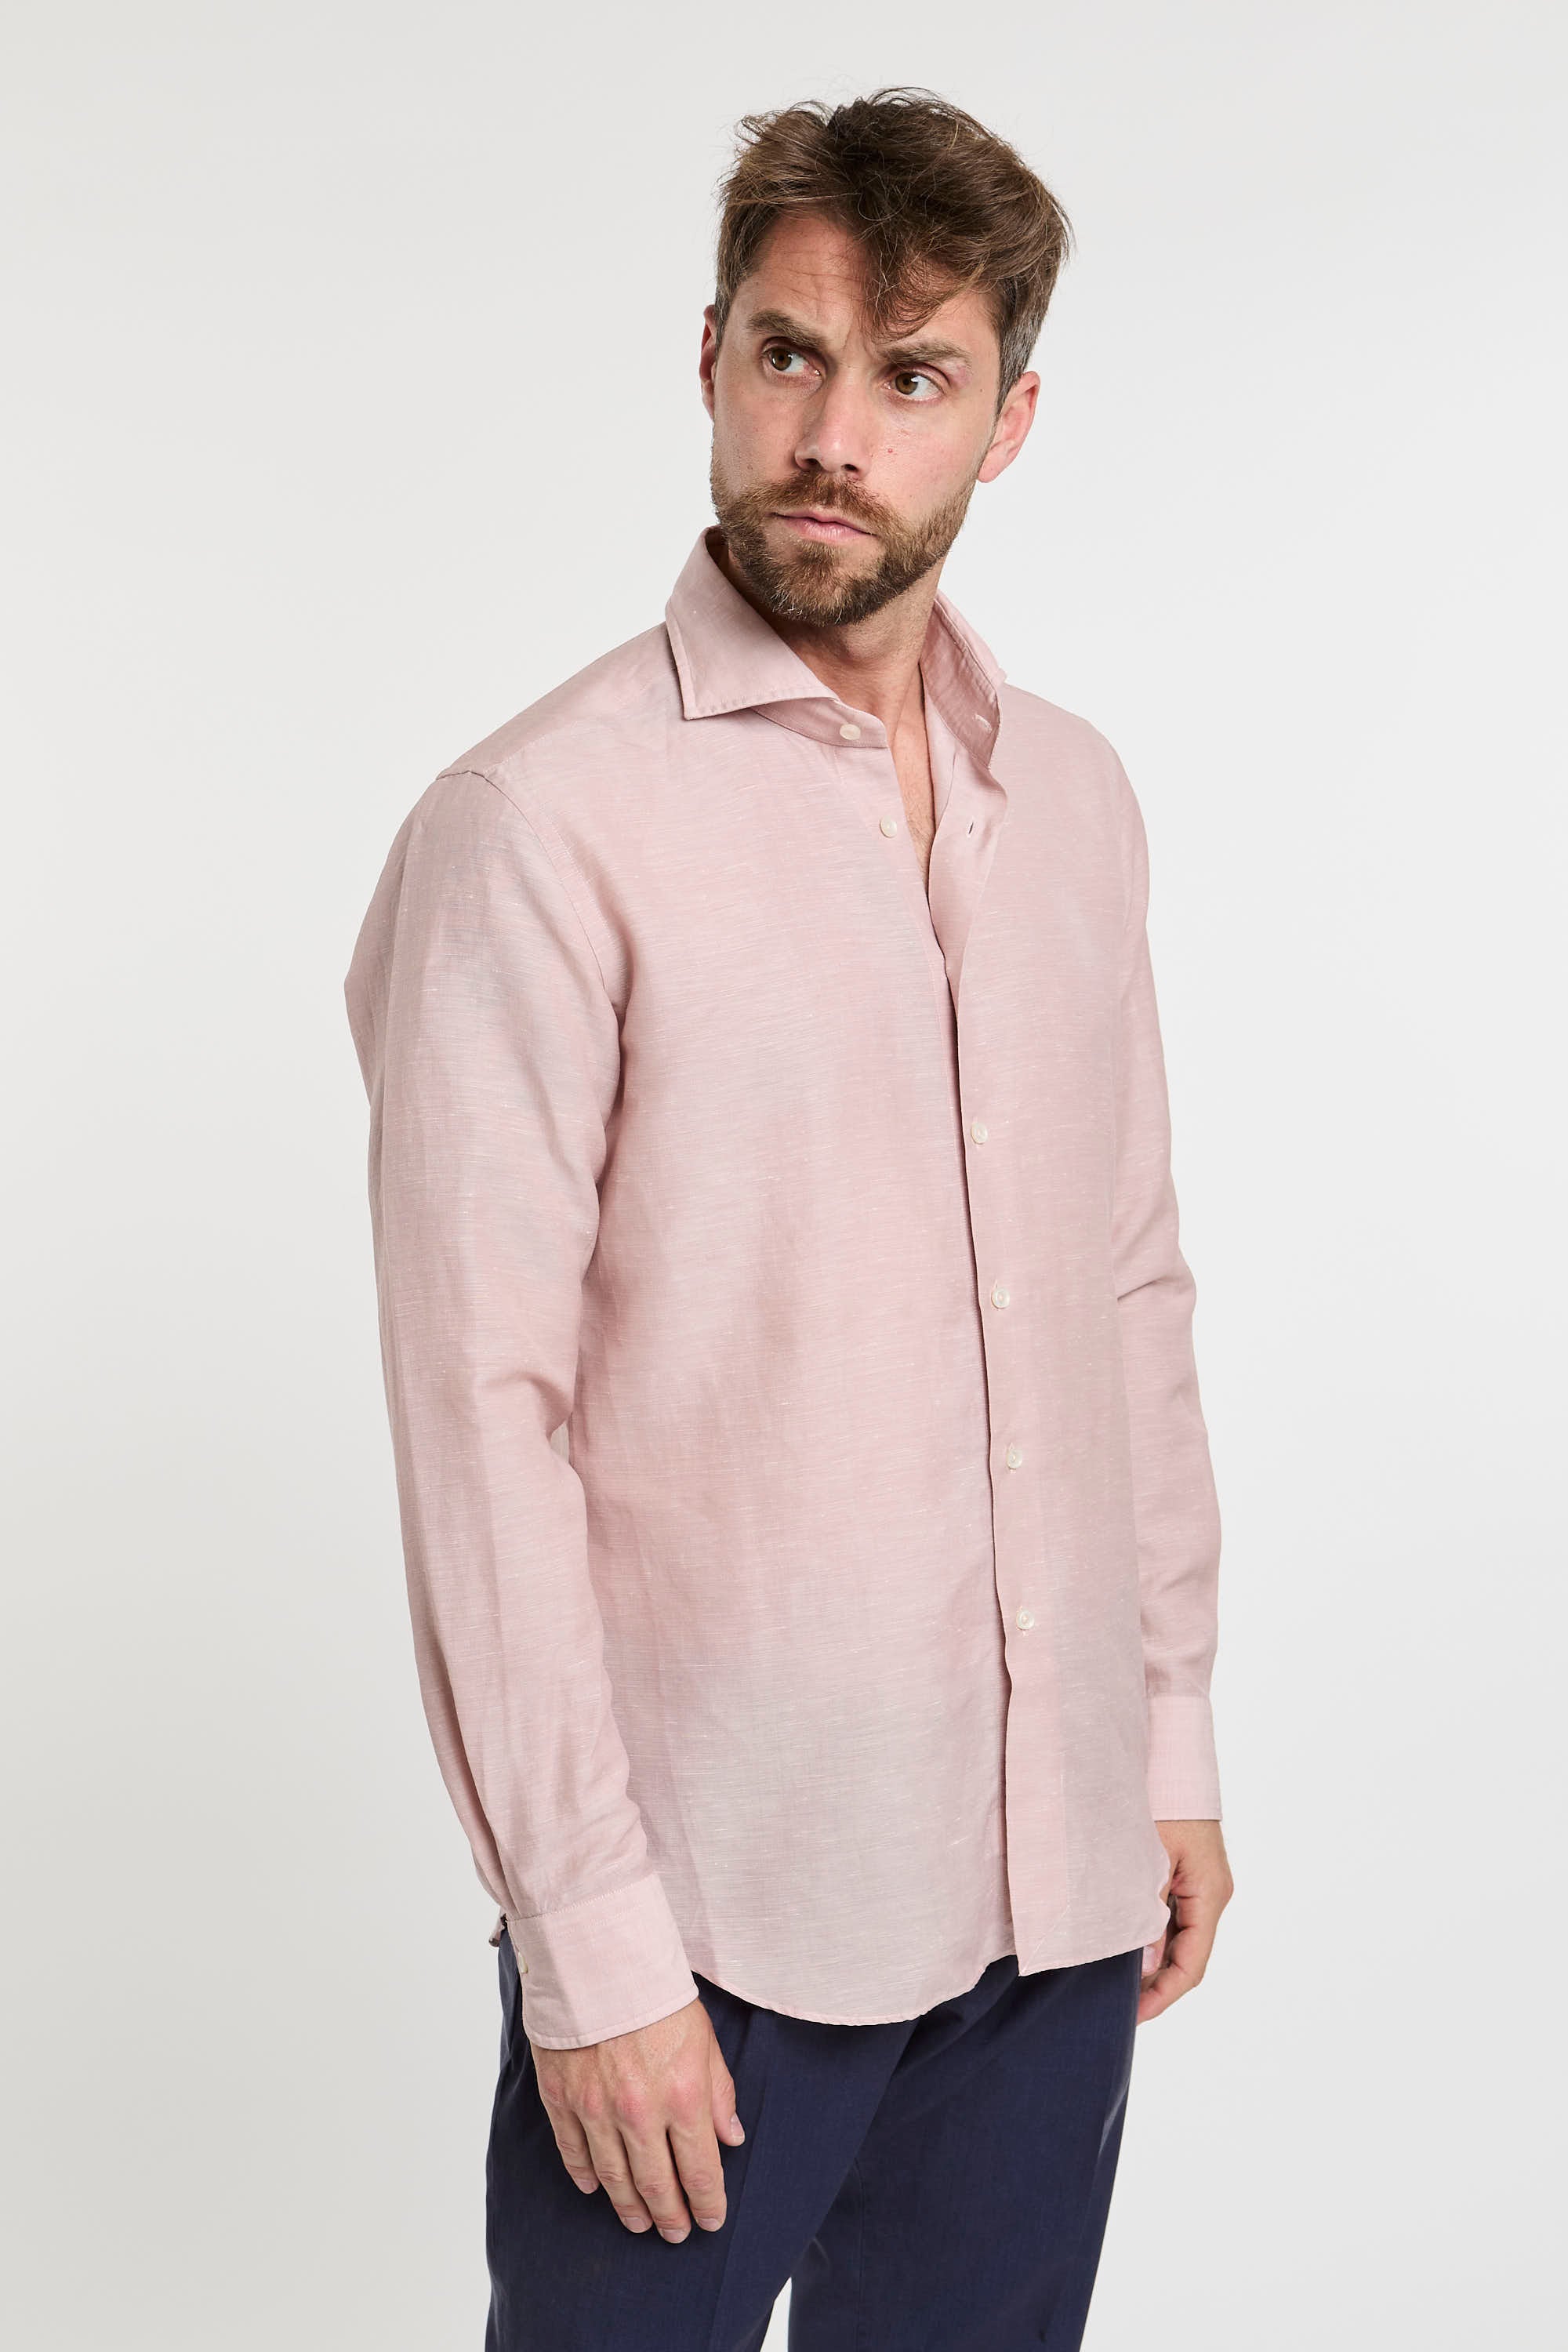 Xacus Wool and Linen Blend Pink Shirt-5